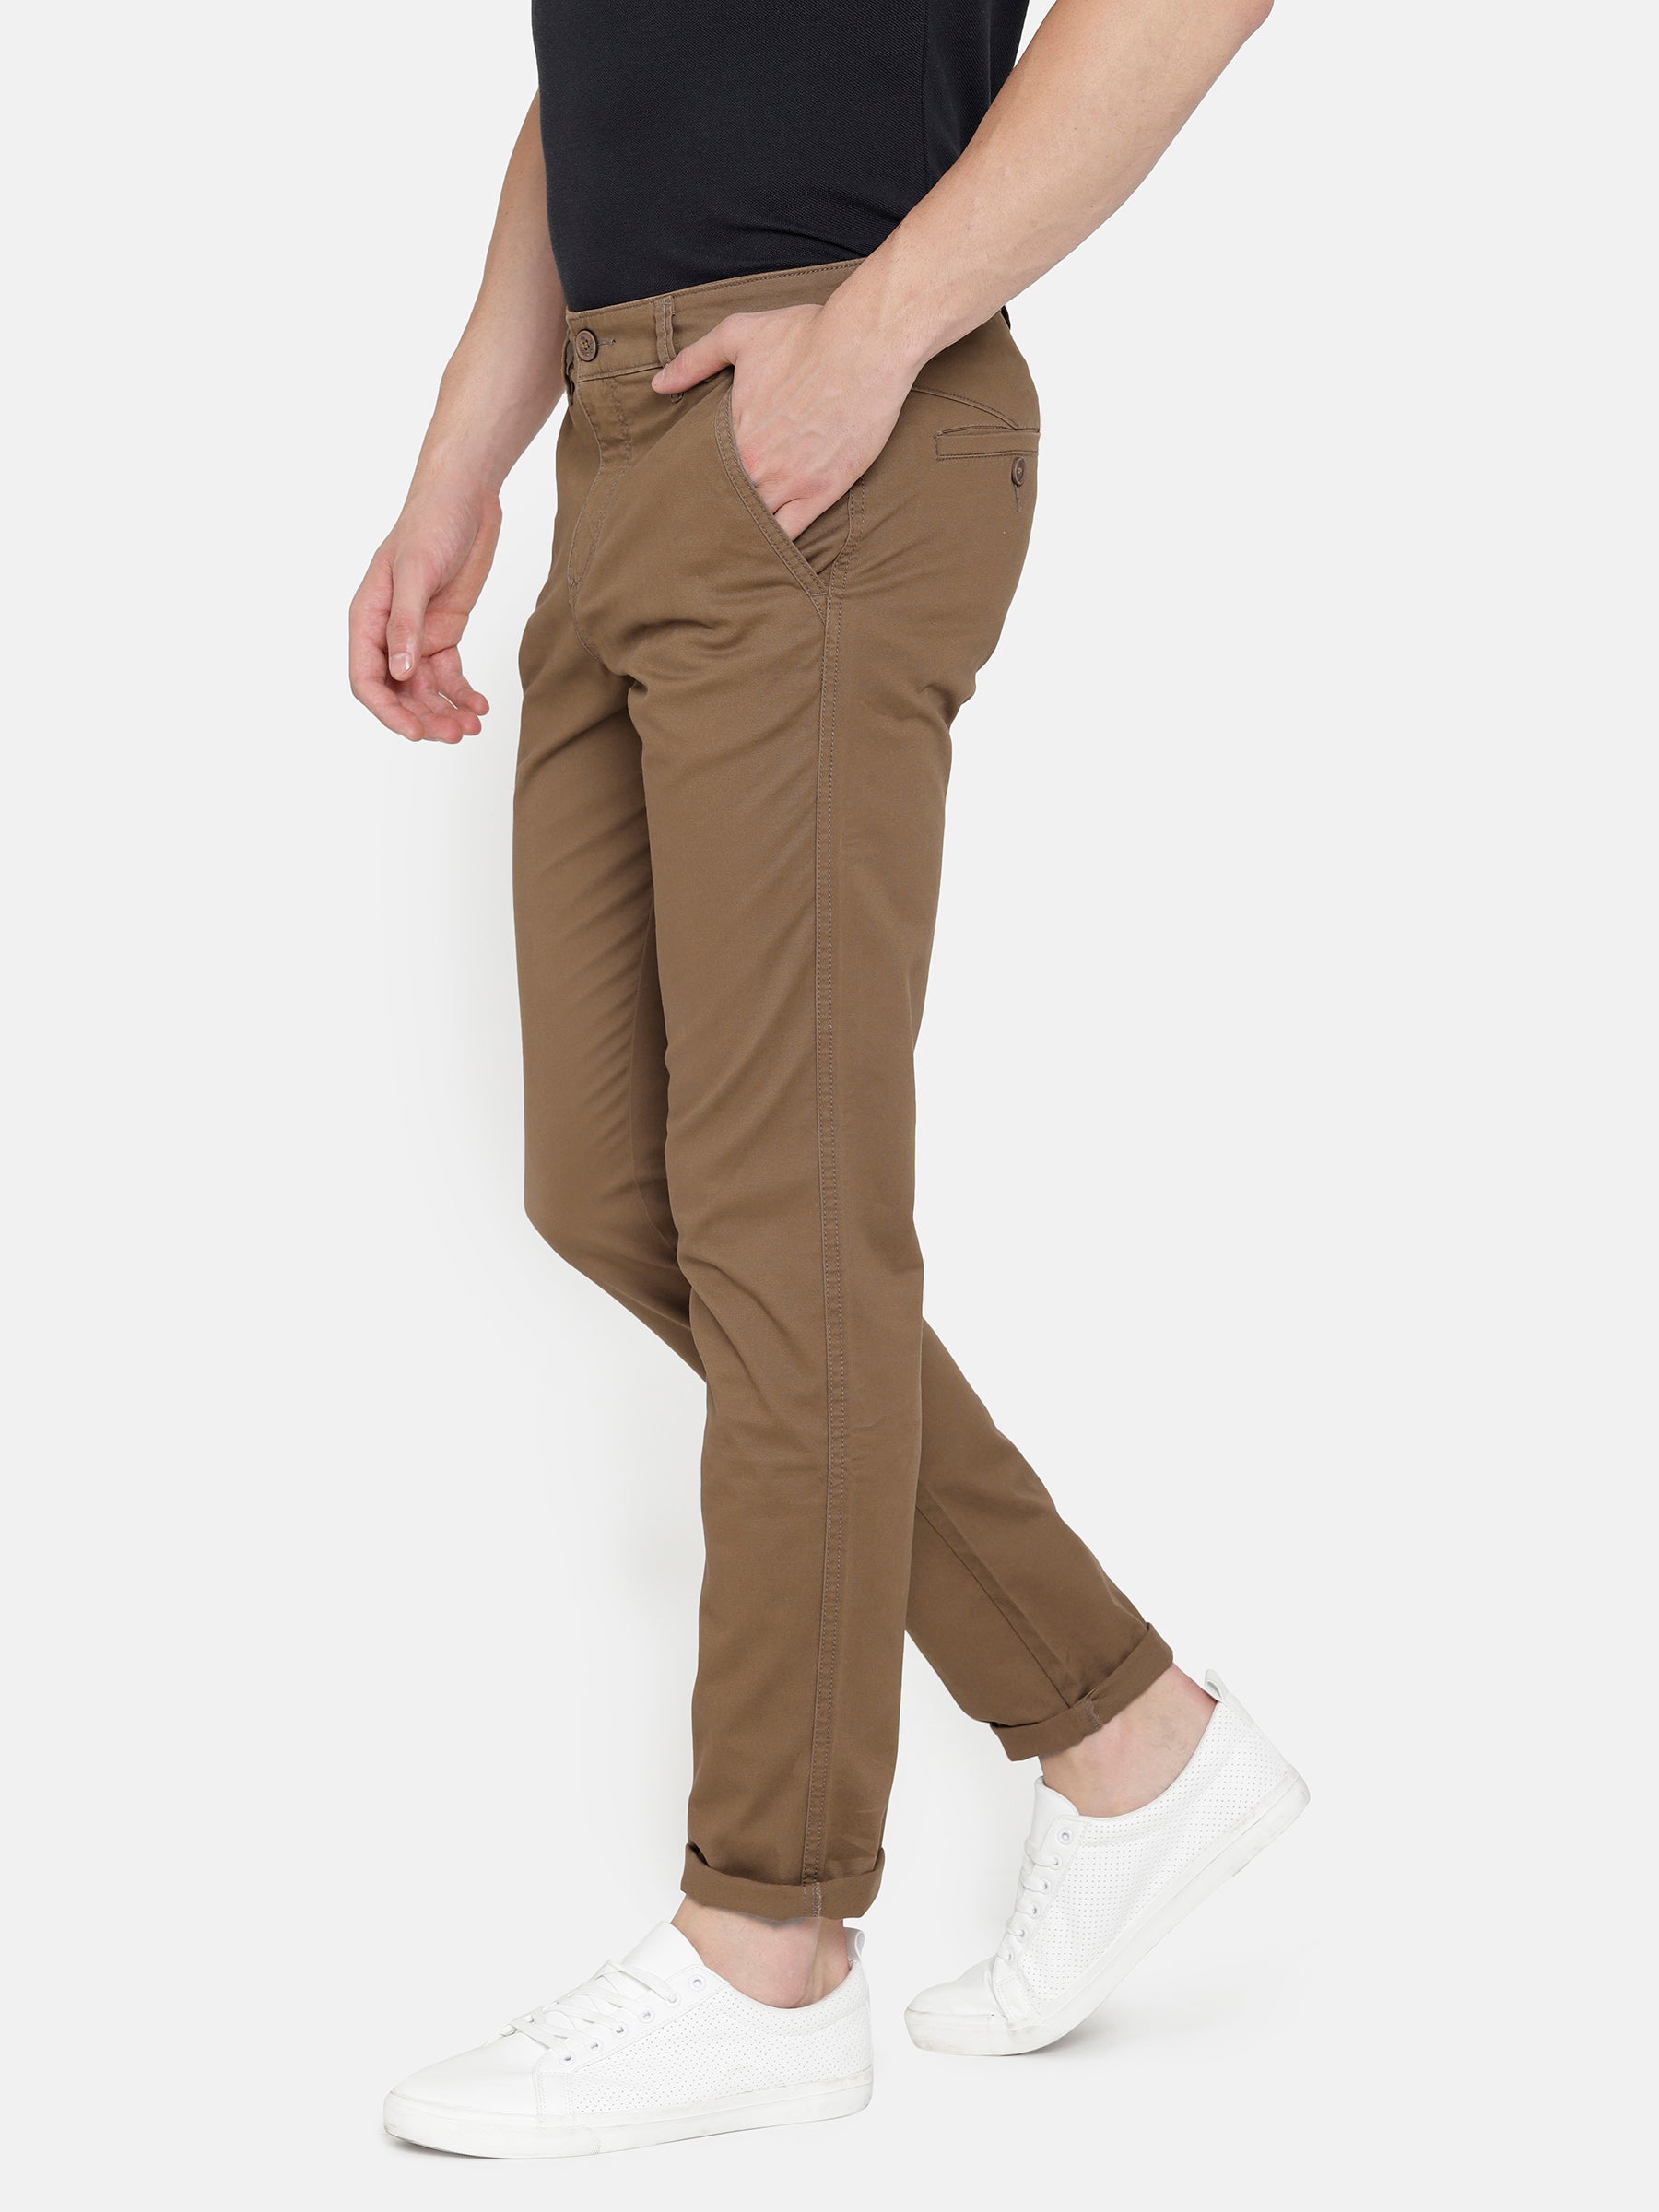 Allen Solly Slim Fit Men Brown Trousers  Buy Allen Solly Slim Fit Men Brown  Trousers Online at Best Prices in India  Flipkartcom